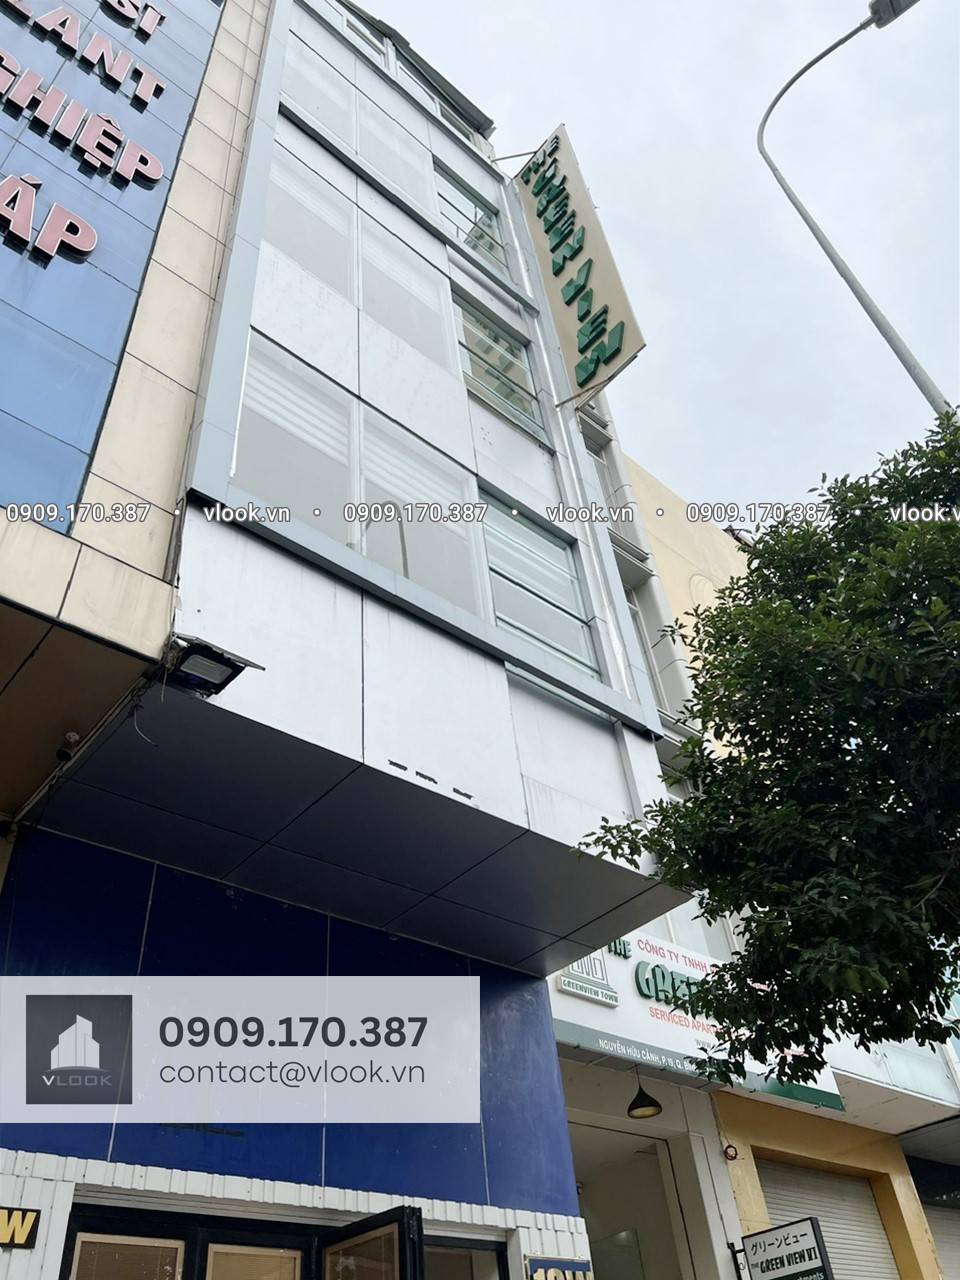 Cao ốc văn phòng cho thuê tòa nhà Green View 19W Nguyễn Hữu Cảnh, Quận Bình Thạnh, TPHCM - vlook.vn - 0909170387